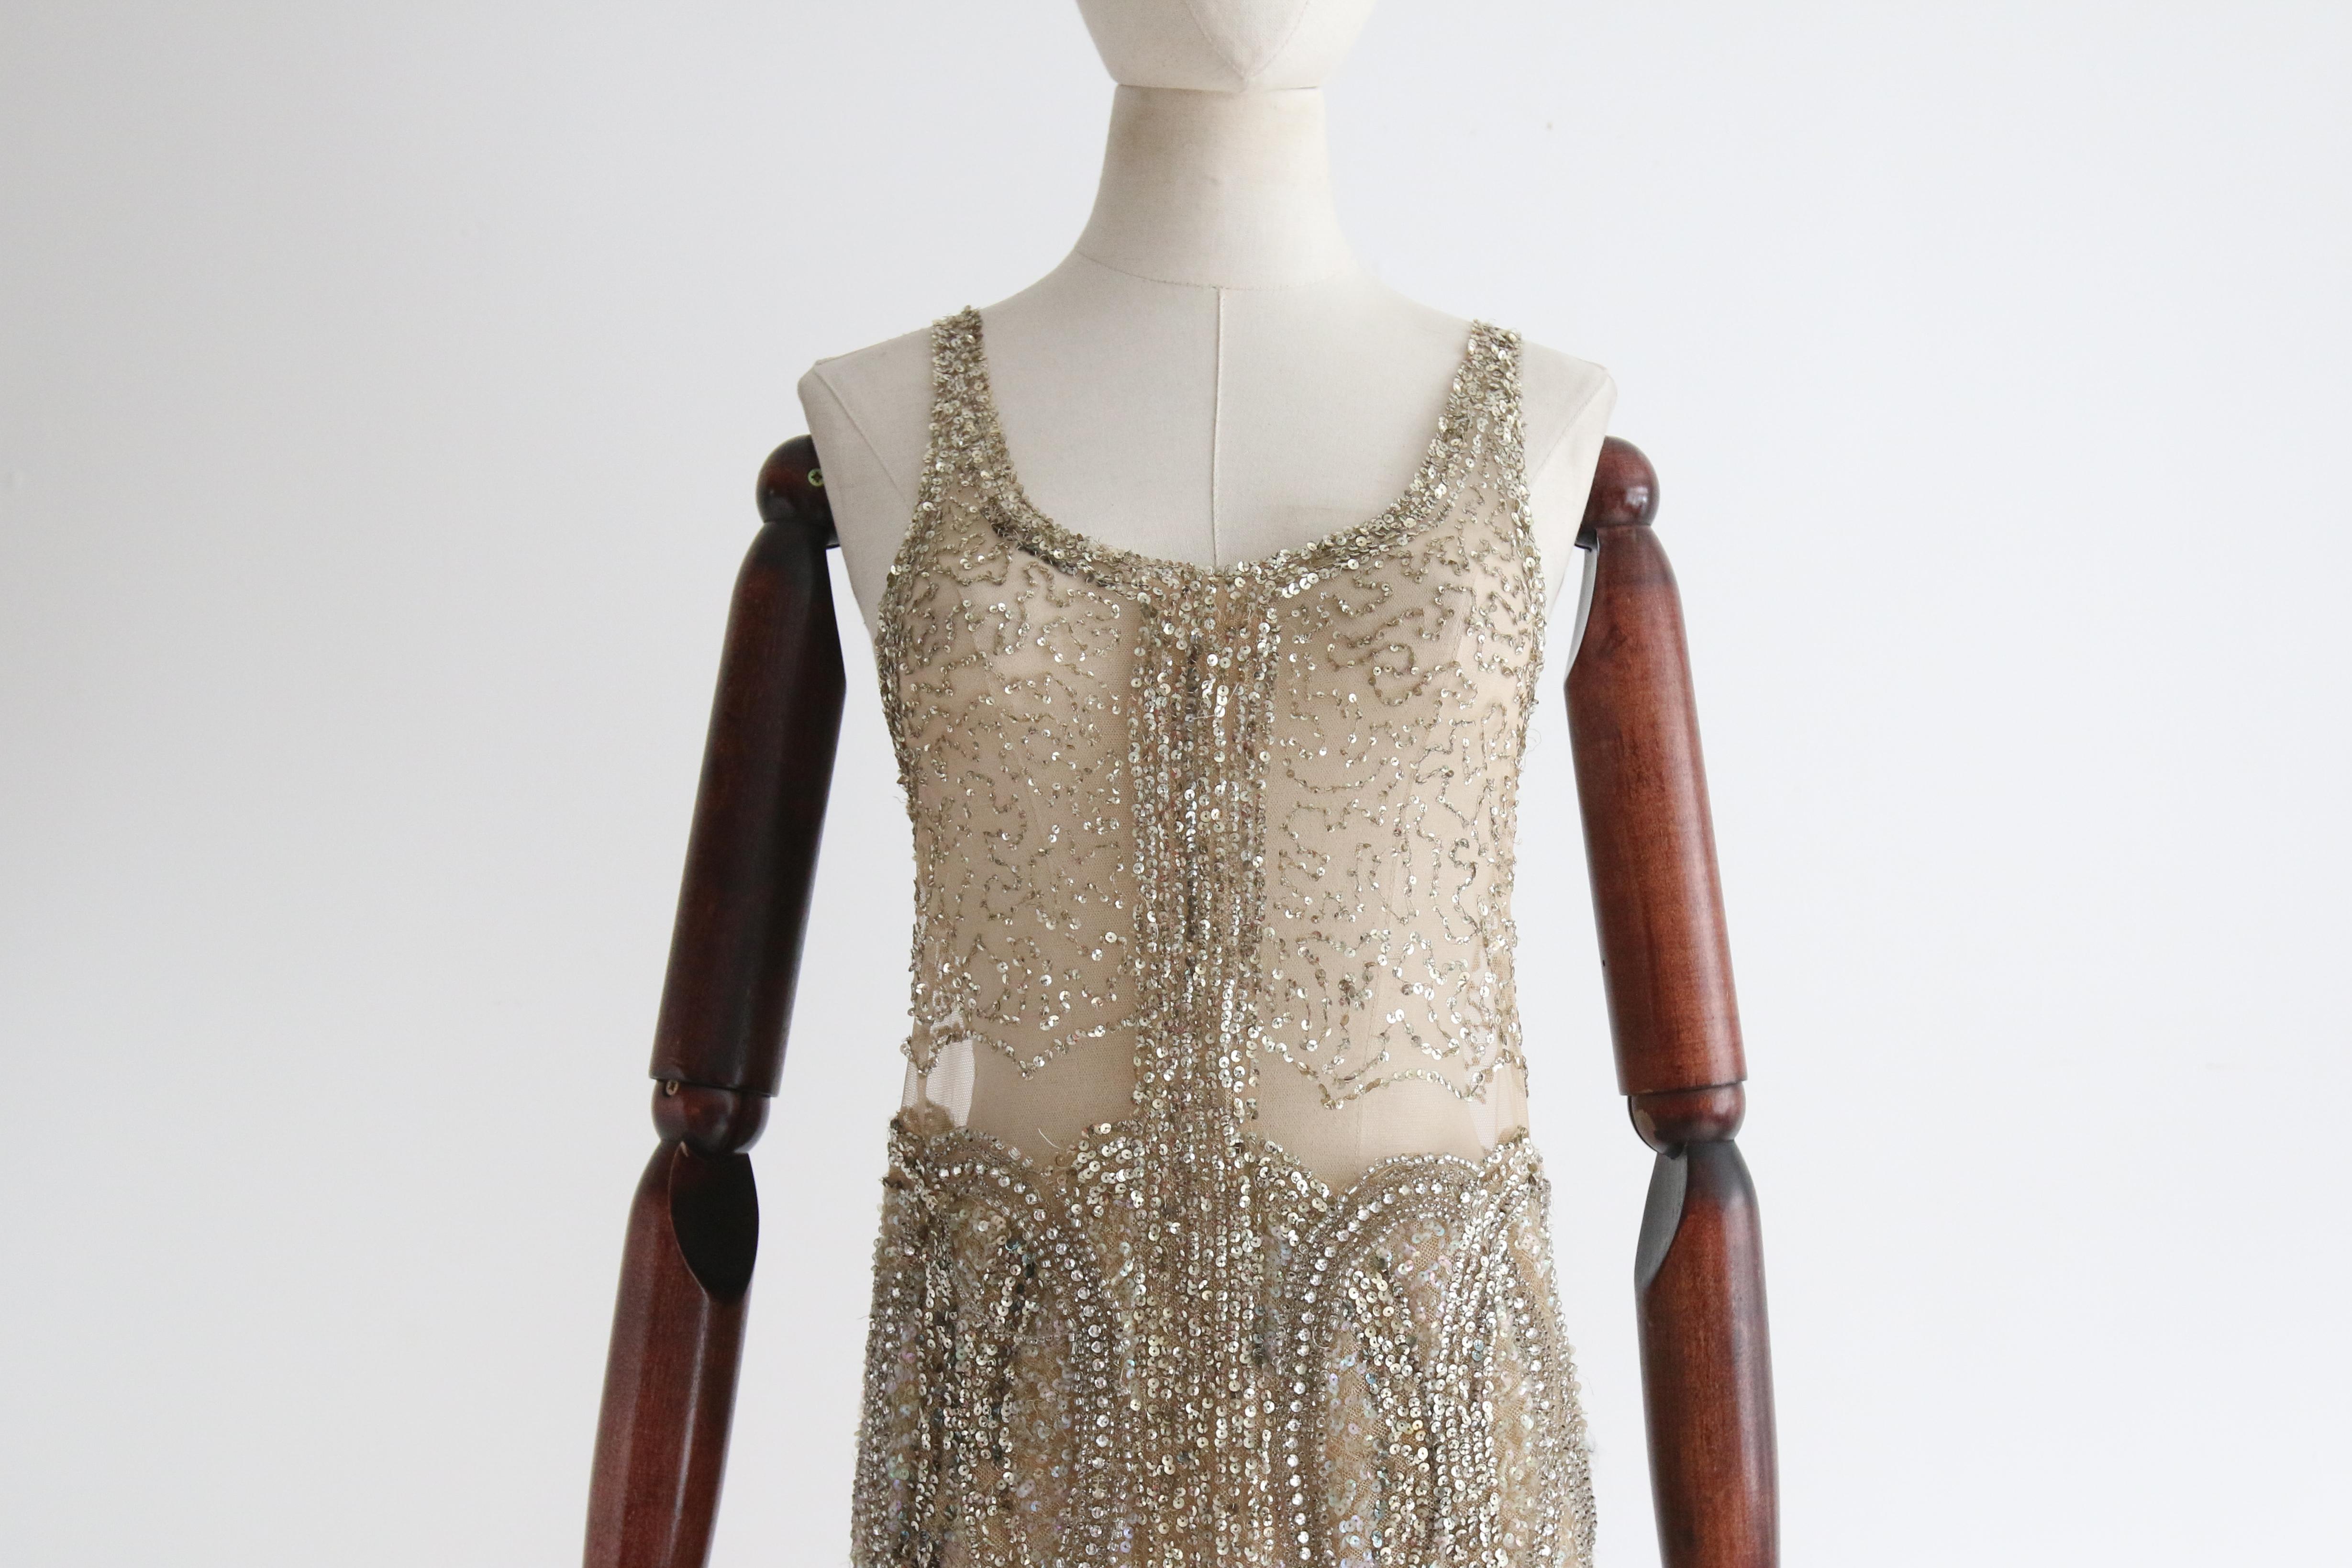 Vintage 1920's Gold Beaded Sequin Dress Flapper Dress UK 6-8 US 2-4 For Sale 1